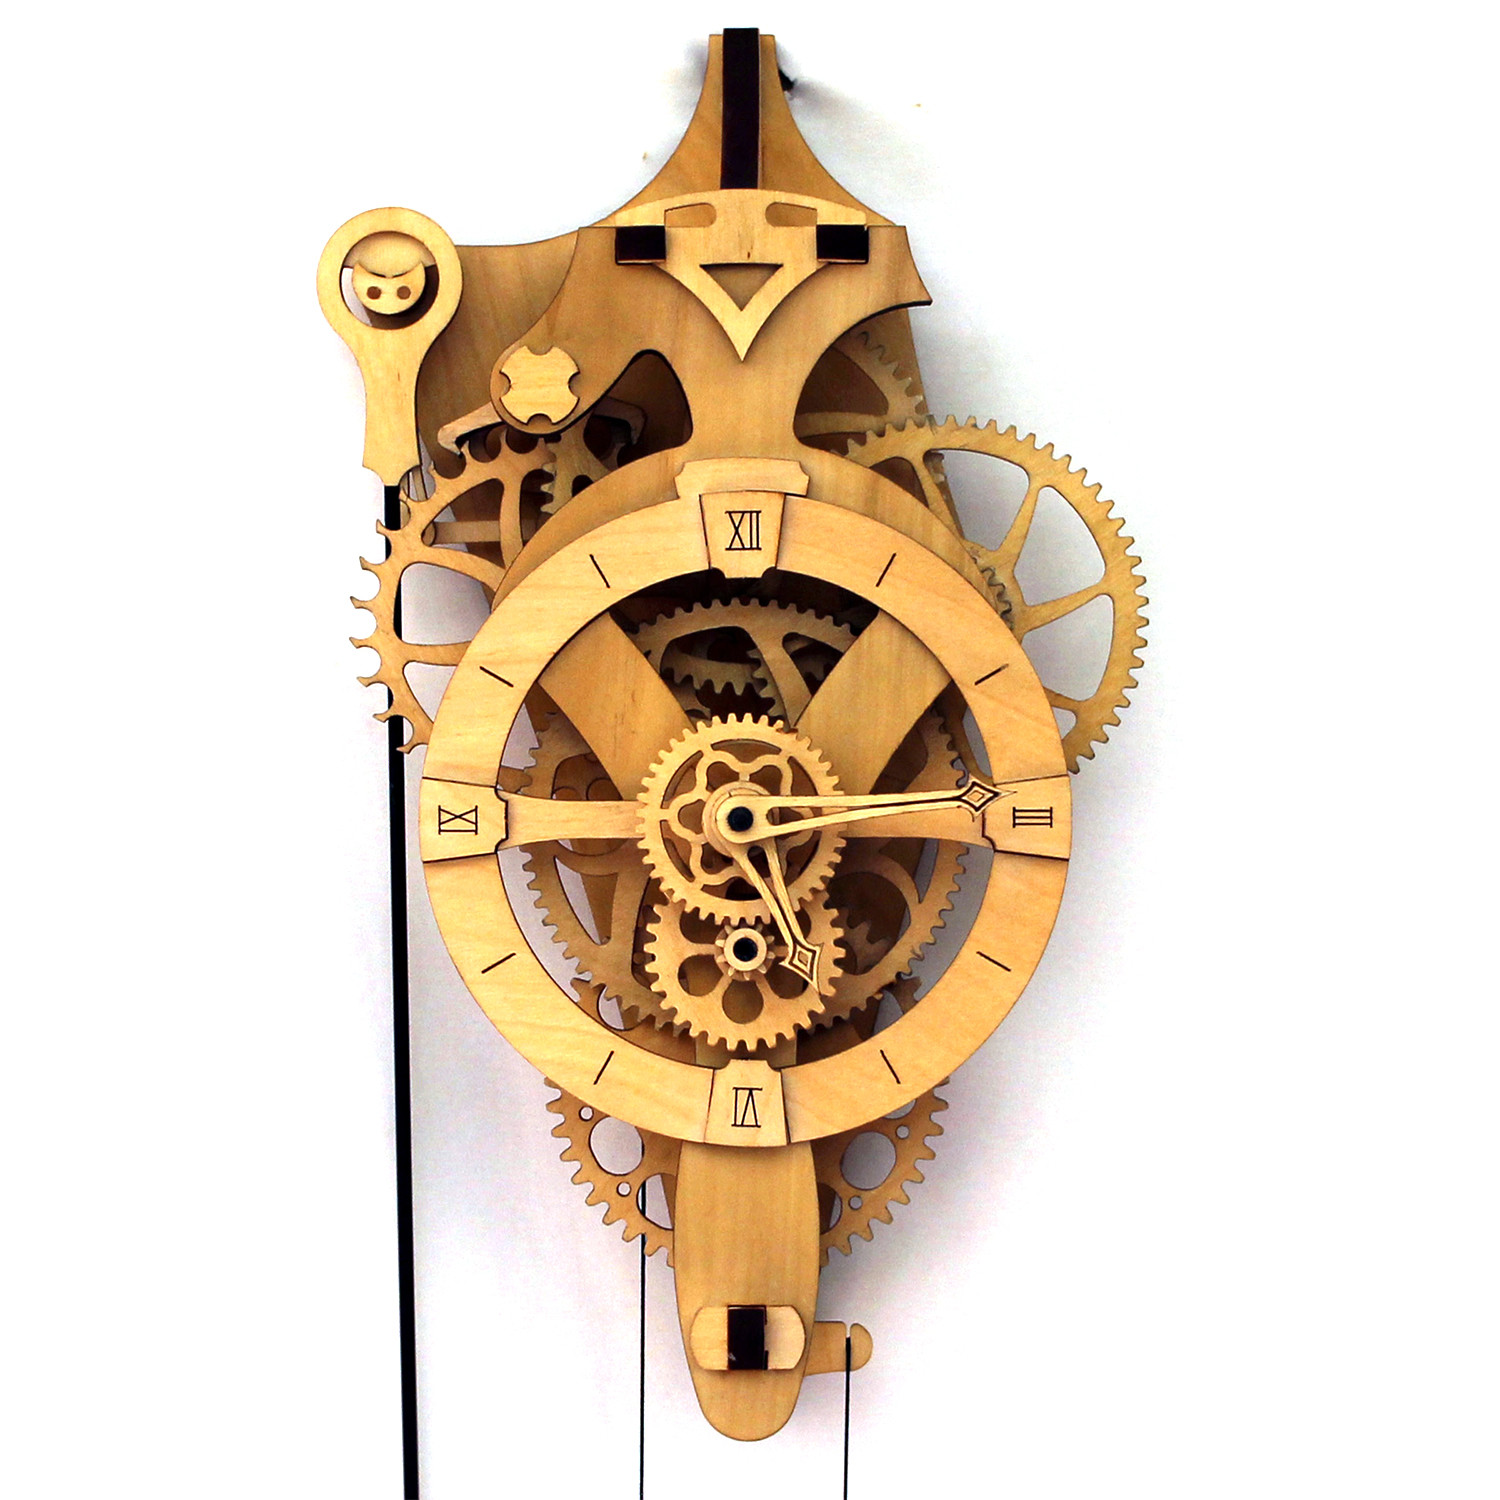 David Wooden Gear Wall Clock Kit - Abong - Touch of Modern
